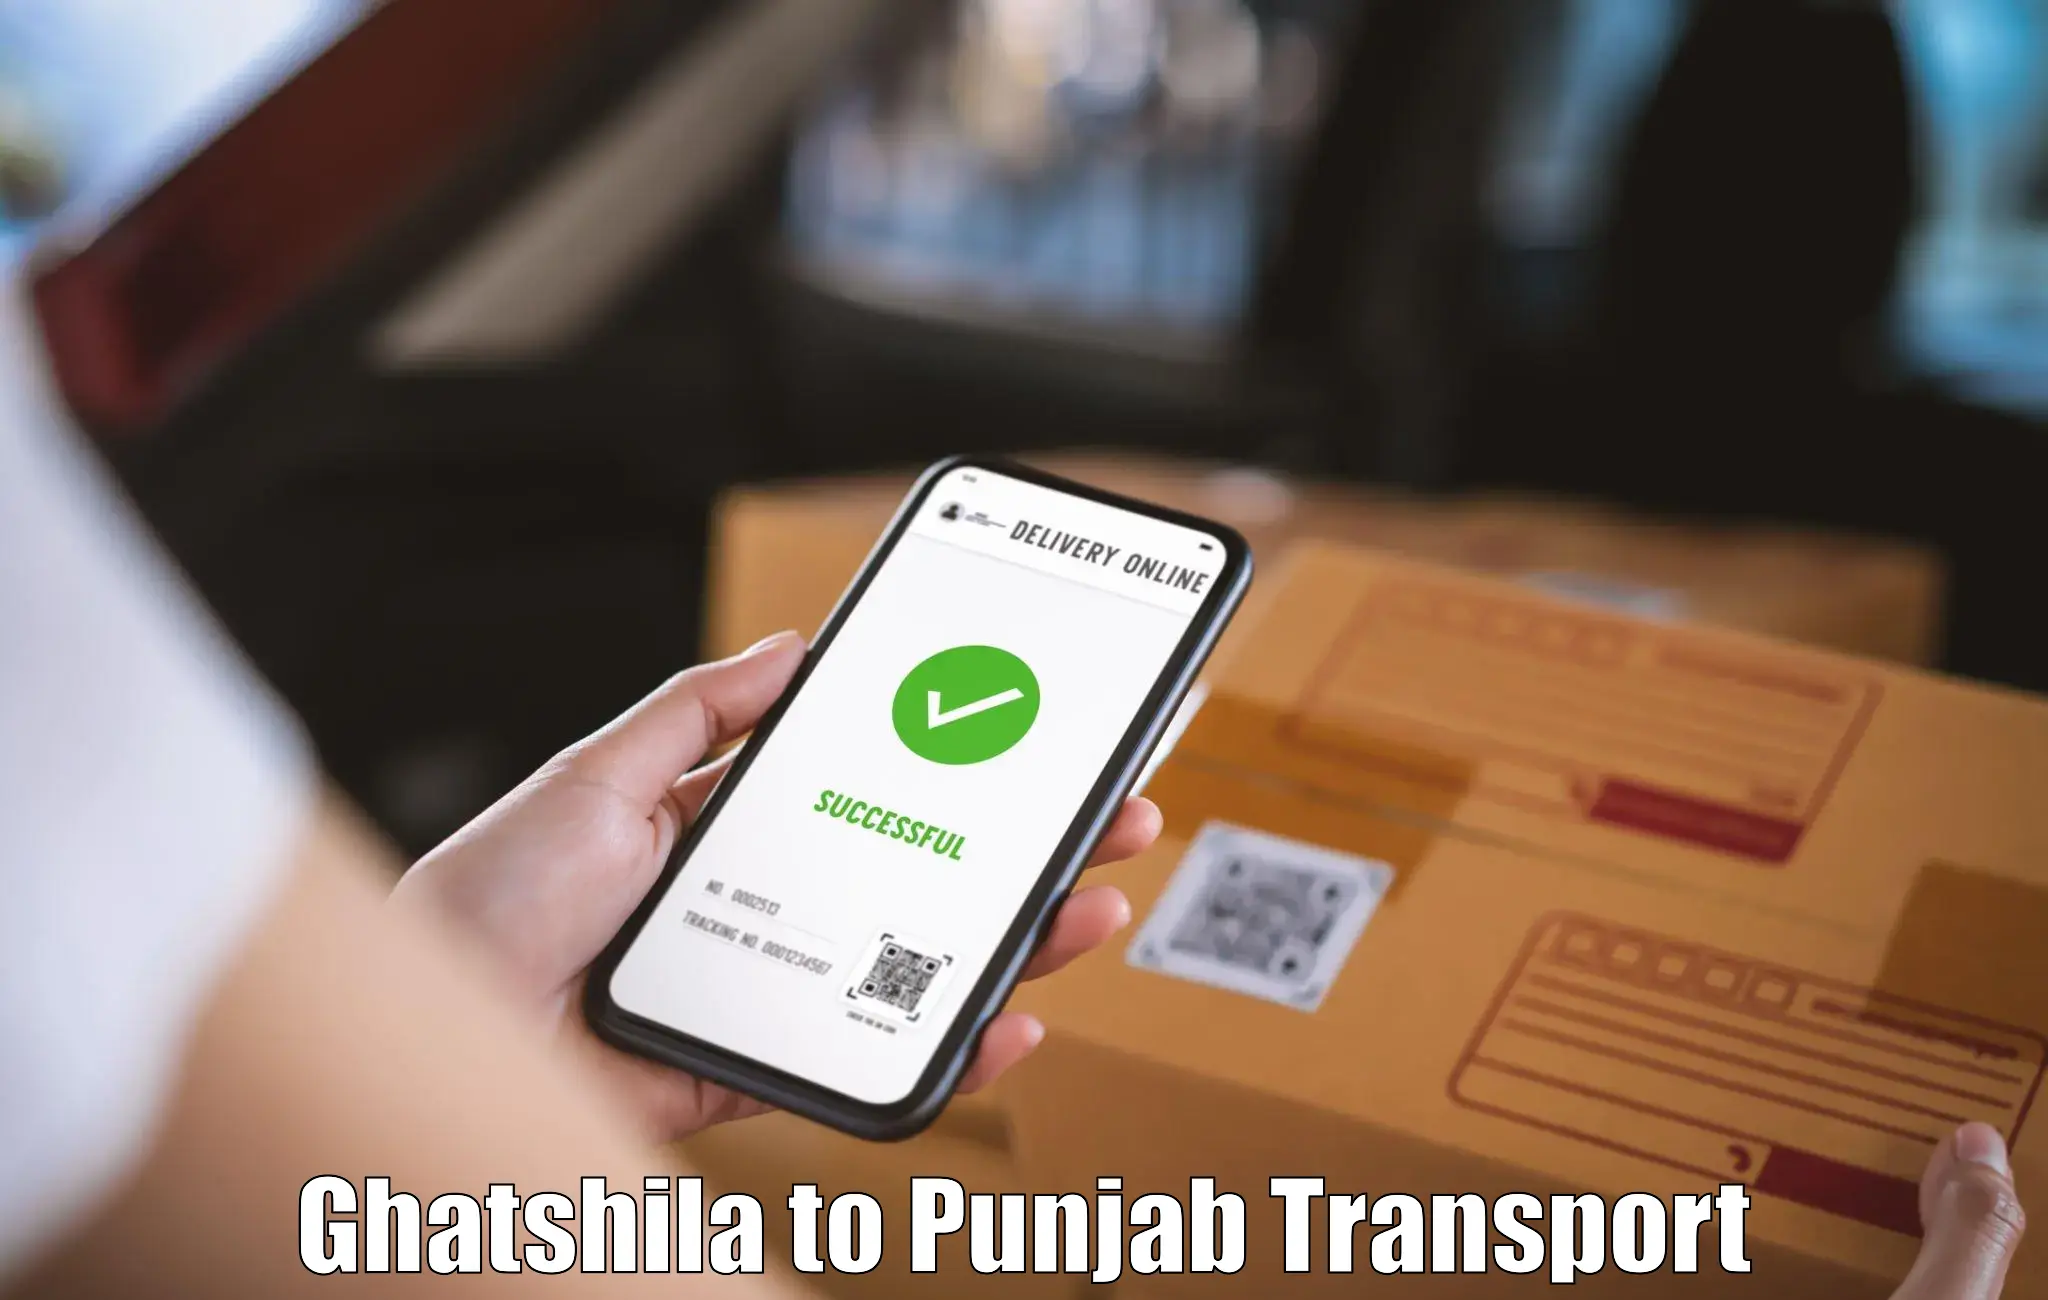 Road transport online services Ghatshila to Jalandhar